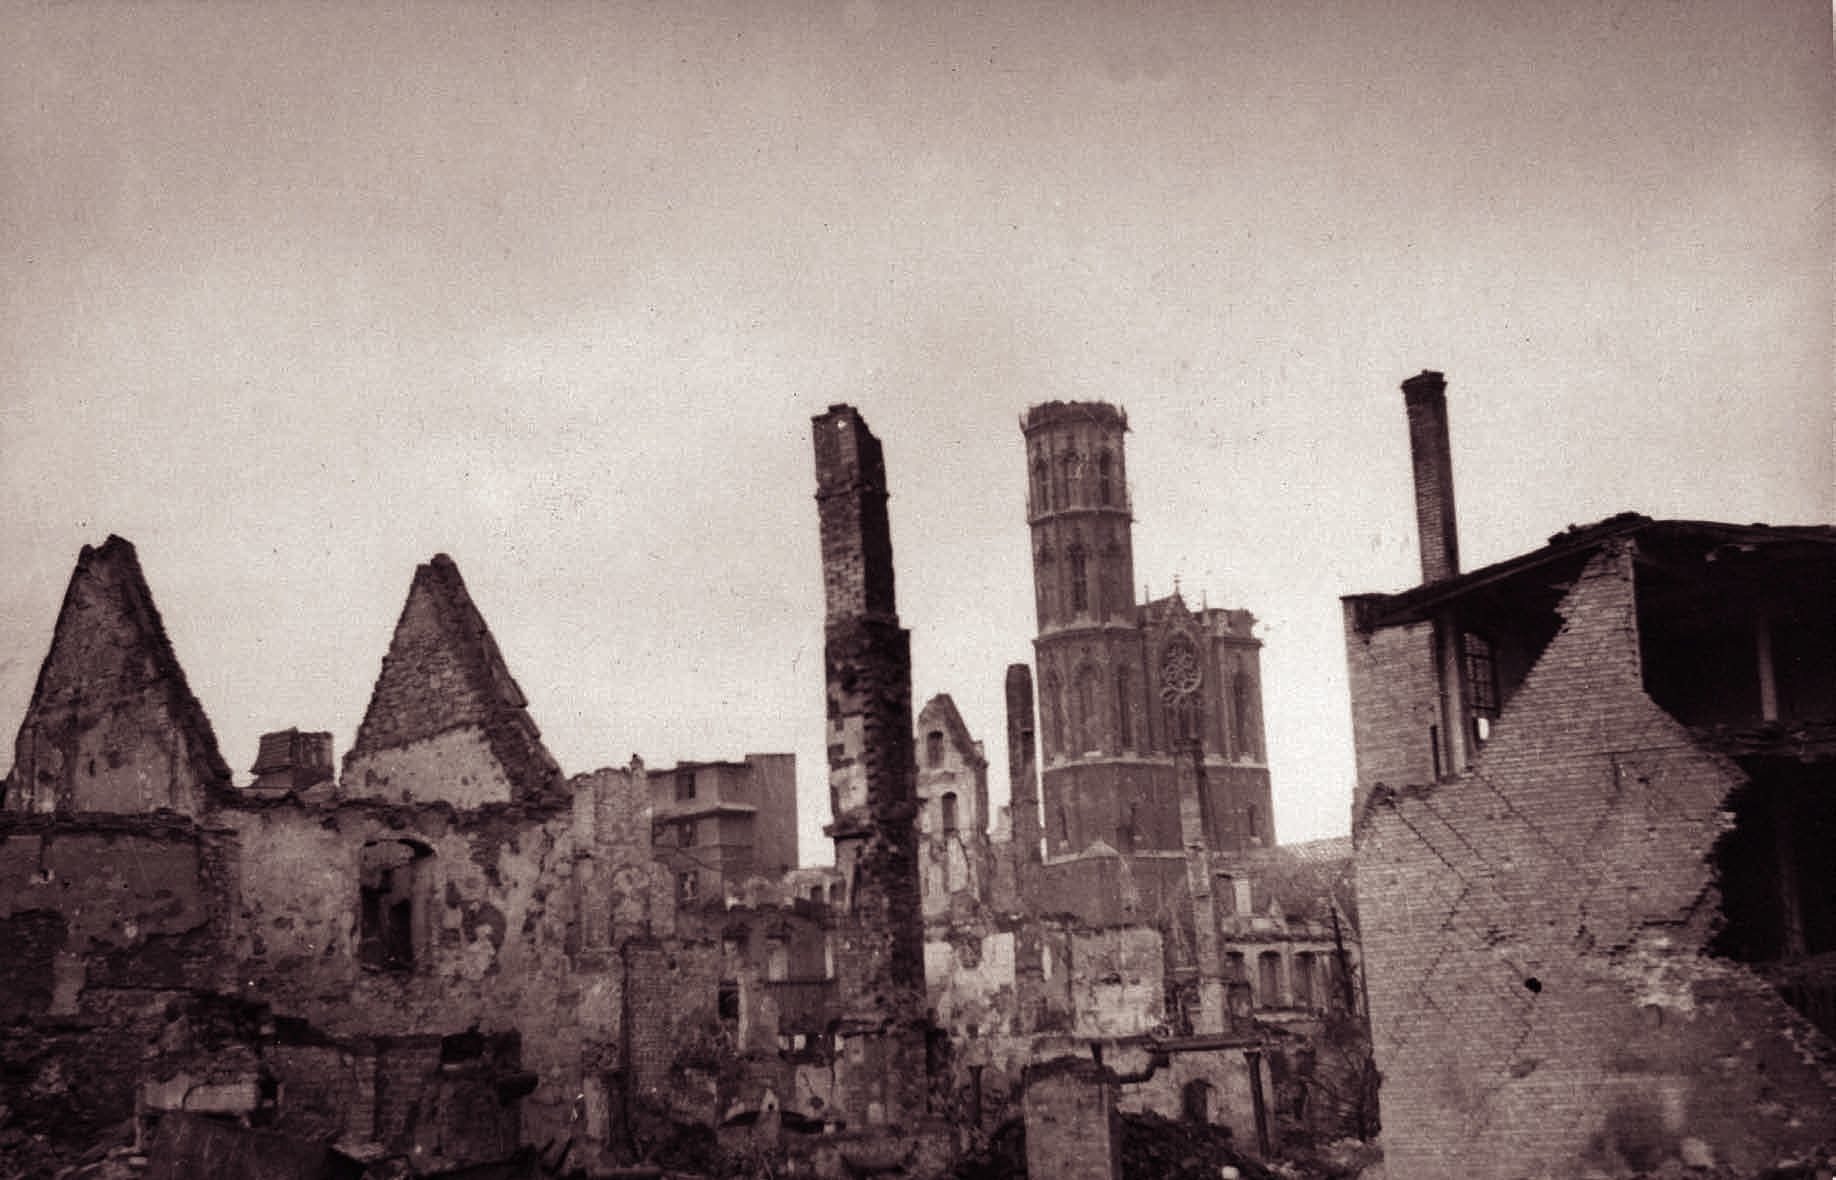 Die Kemenate Hagenbrücke 5 in der zerstörten Stadt 1945. Blick von Nordosten, im Hintergrund die beschädigte Kirche St. Andreas.